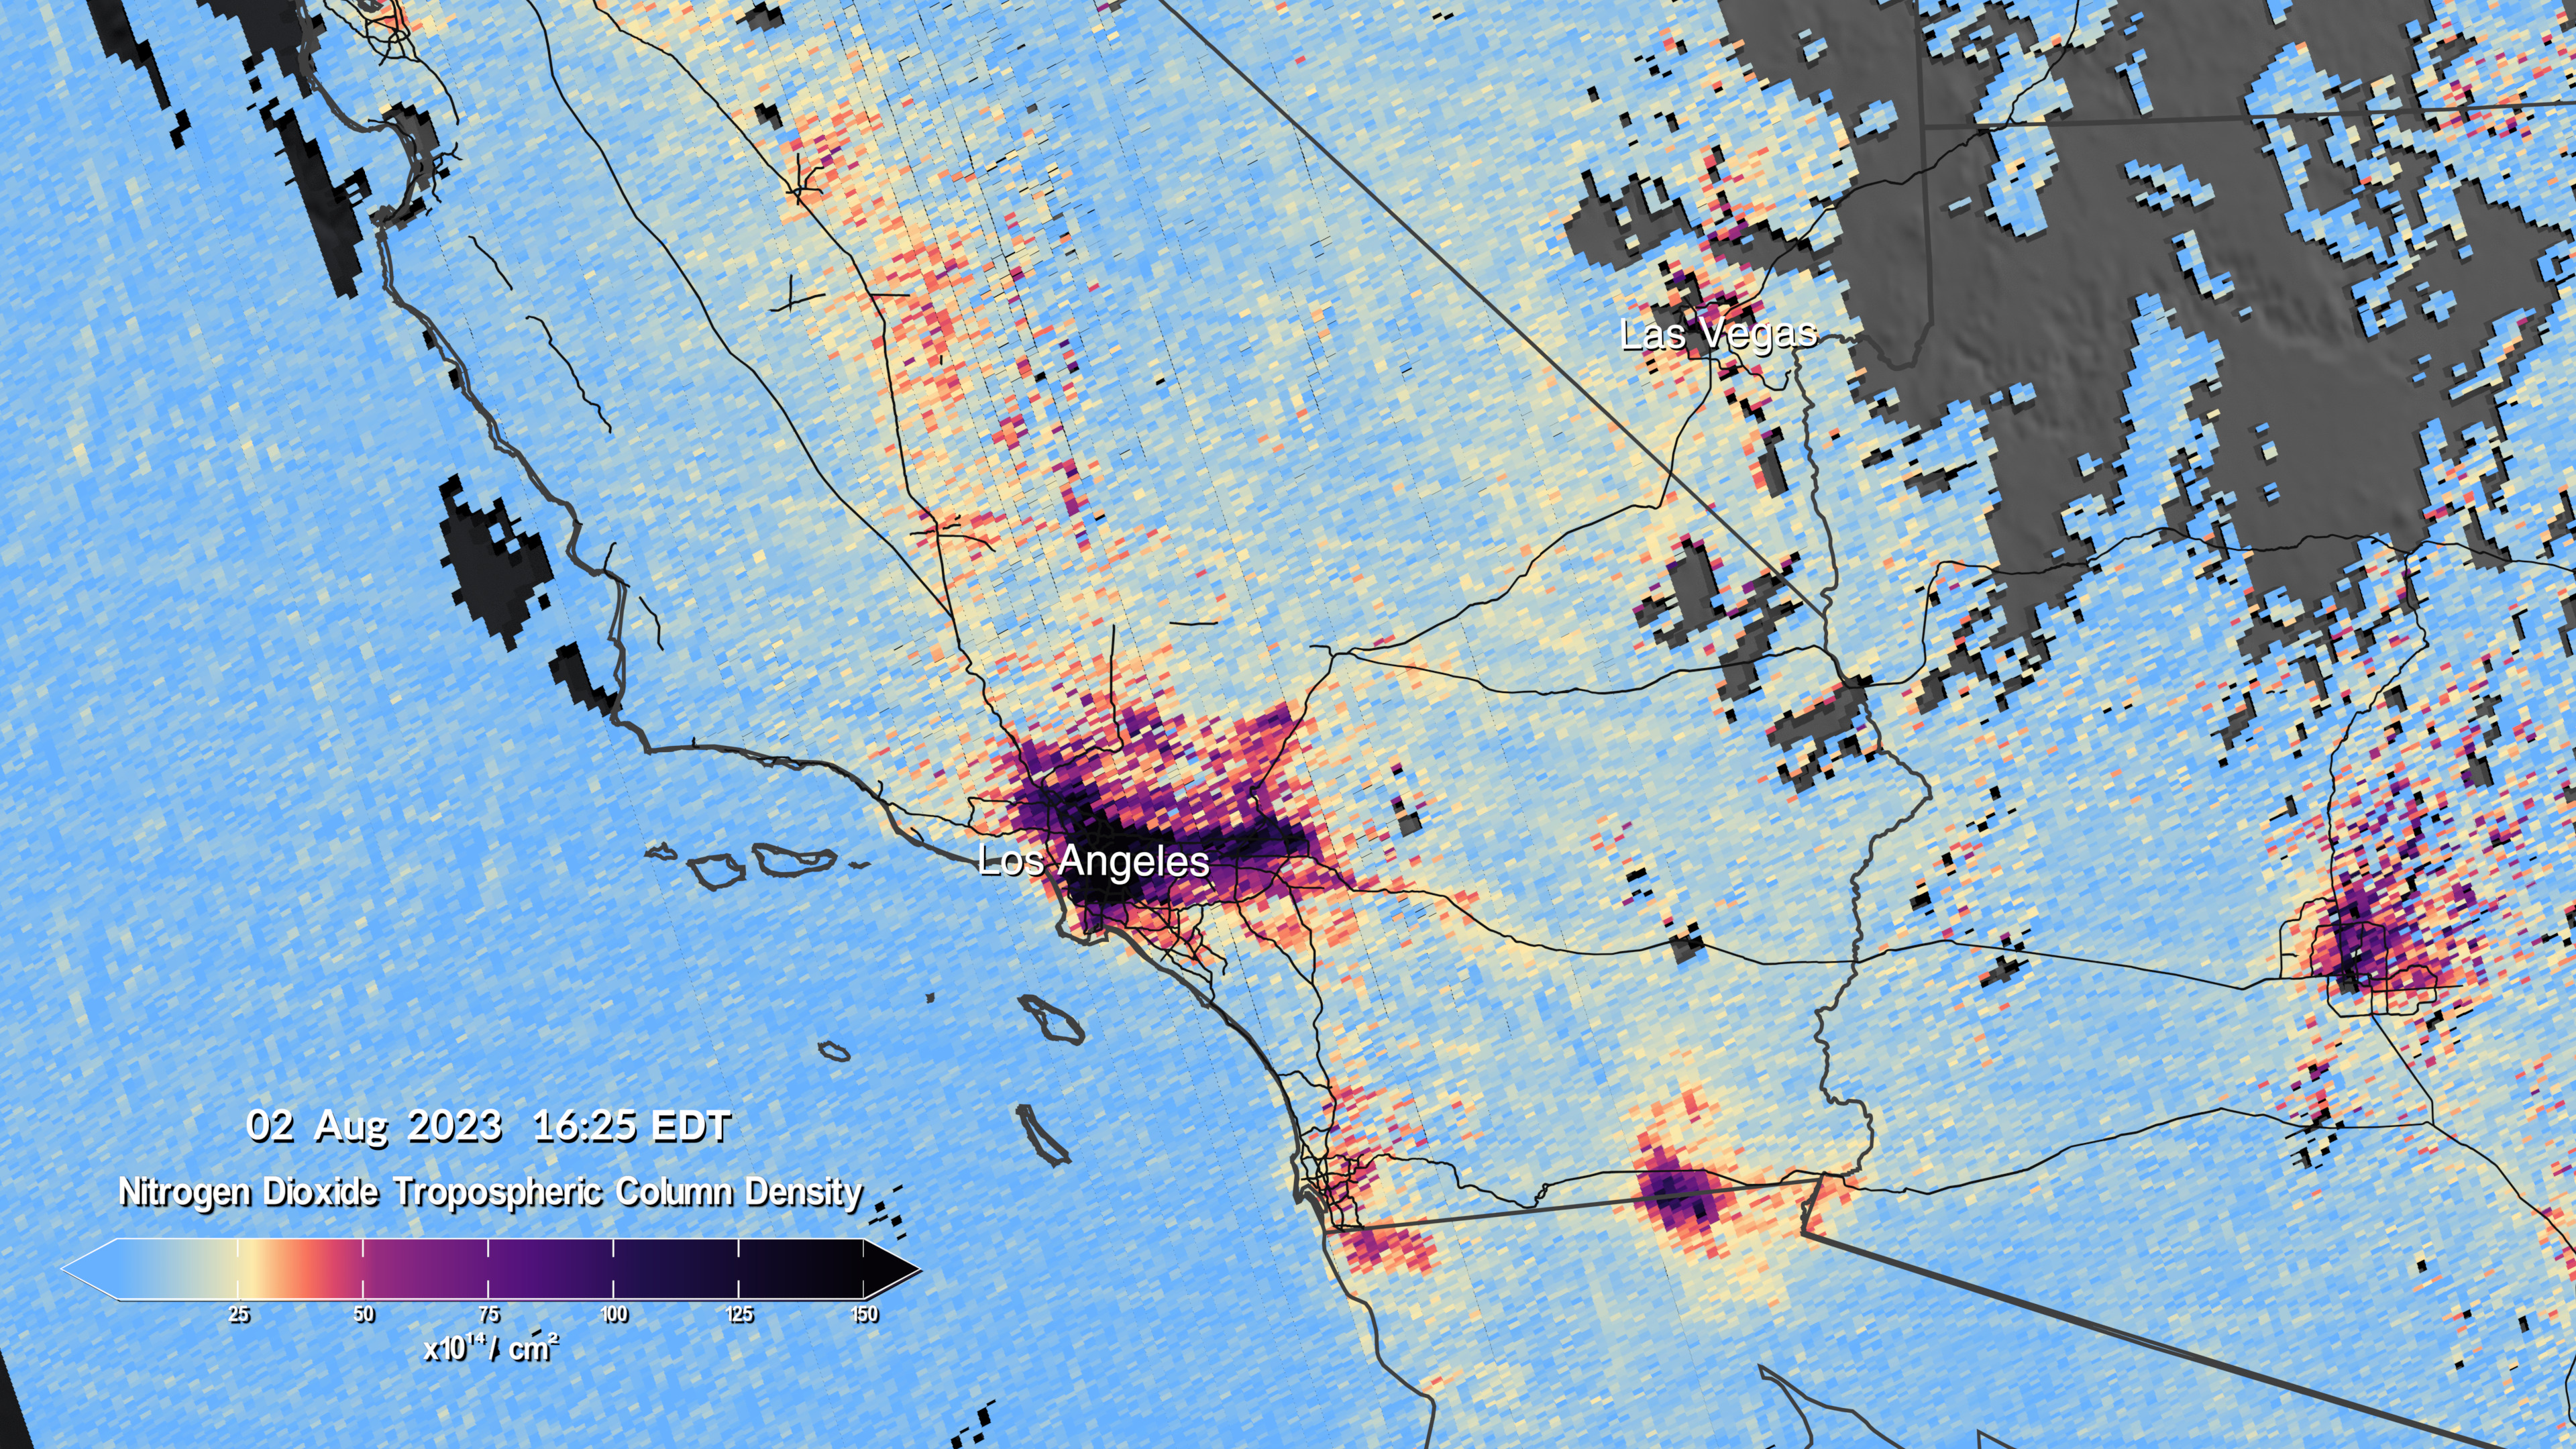 Este par de imagens mostra os níveis de dióxido de nitrogênio no sul da Califórnia às 12h14 e 16h24 do dia 2 de agosto, conforme medido pelo TEMPO.